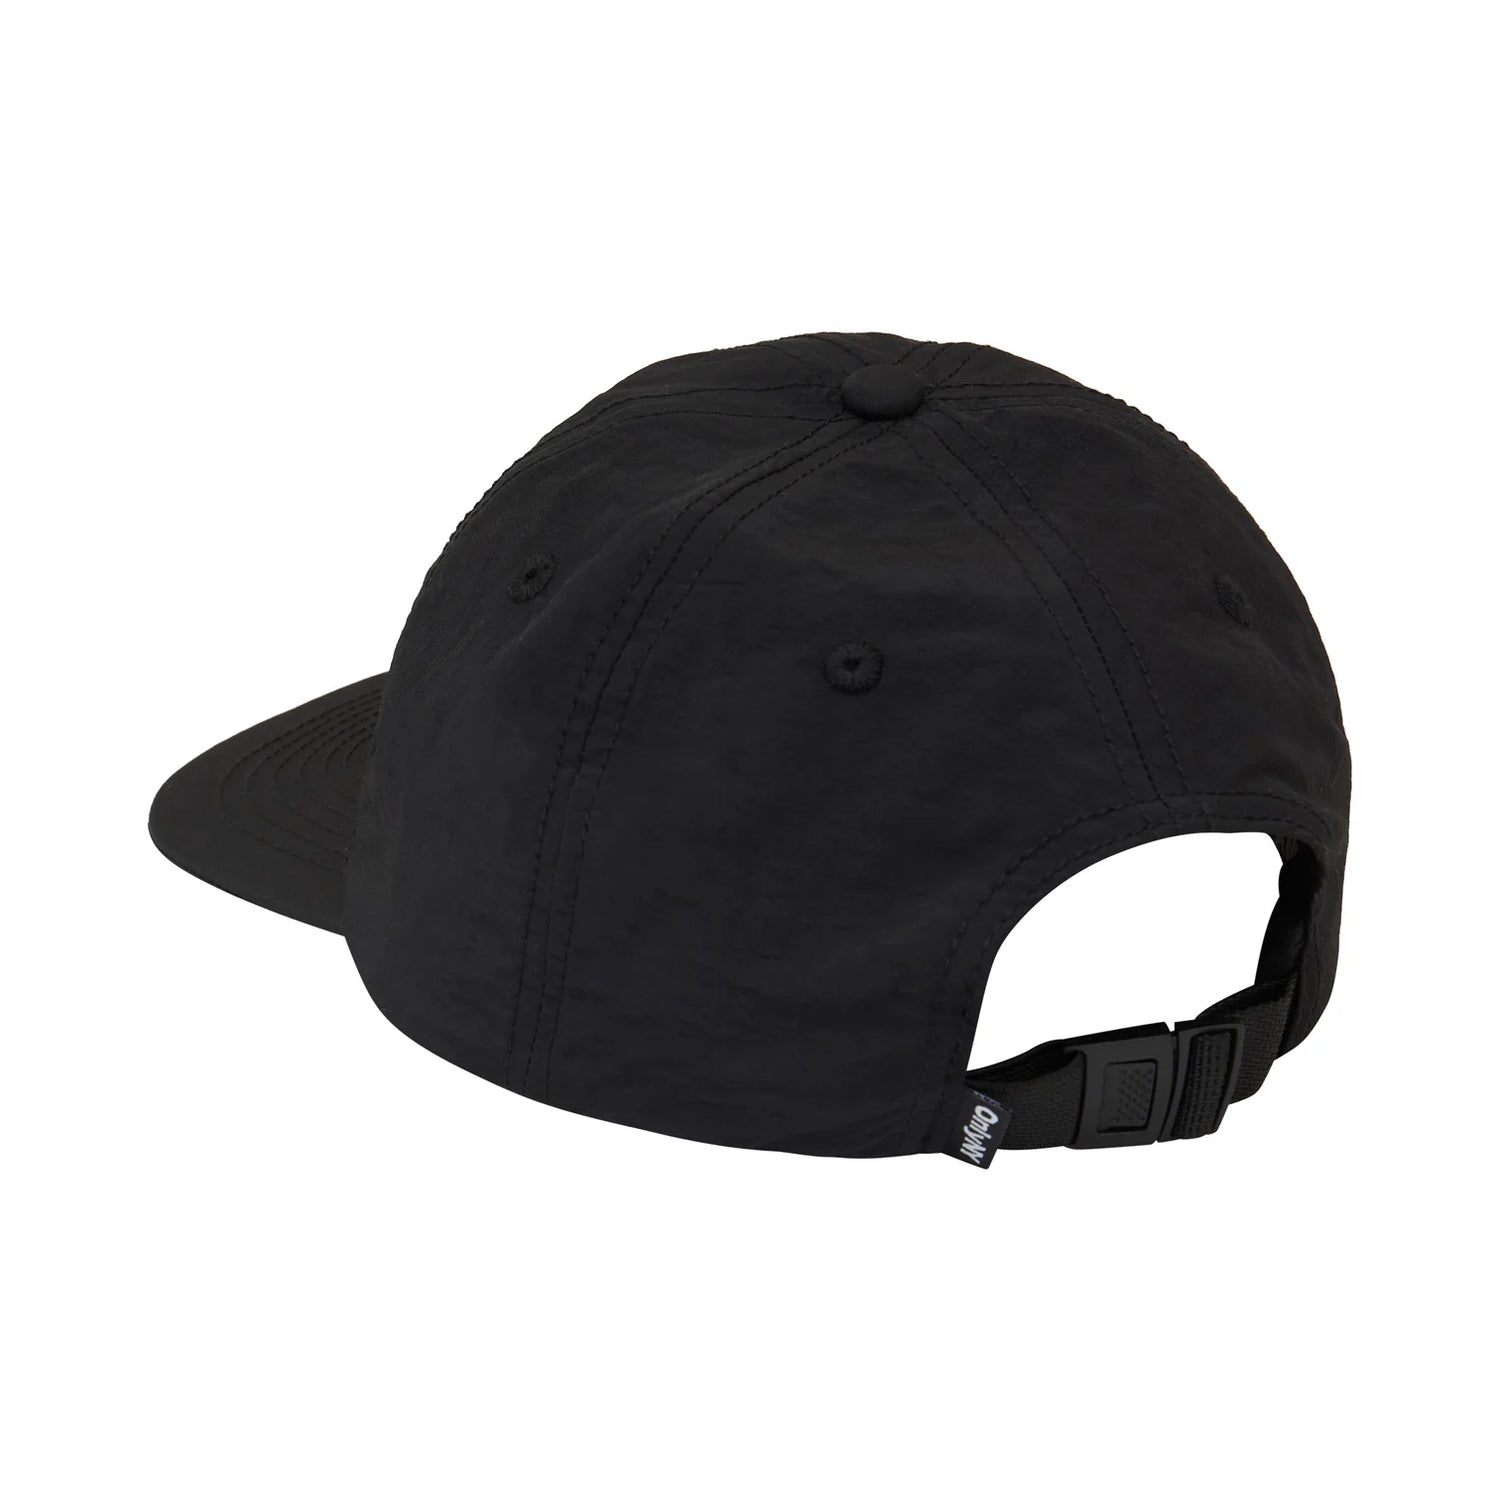 Only NY NY Speed Logo Hat - Black